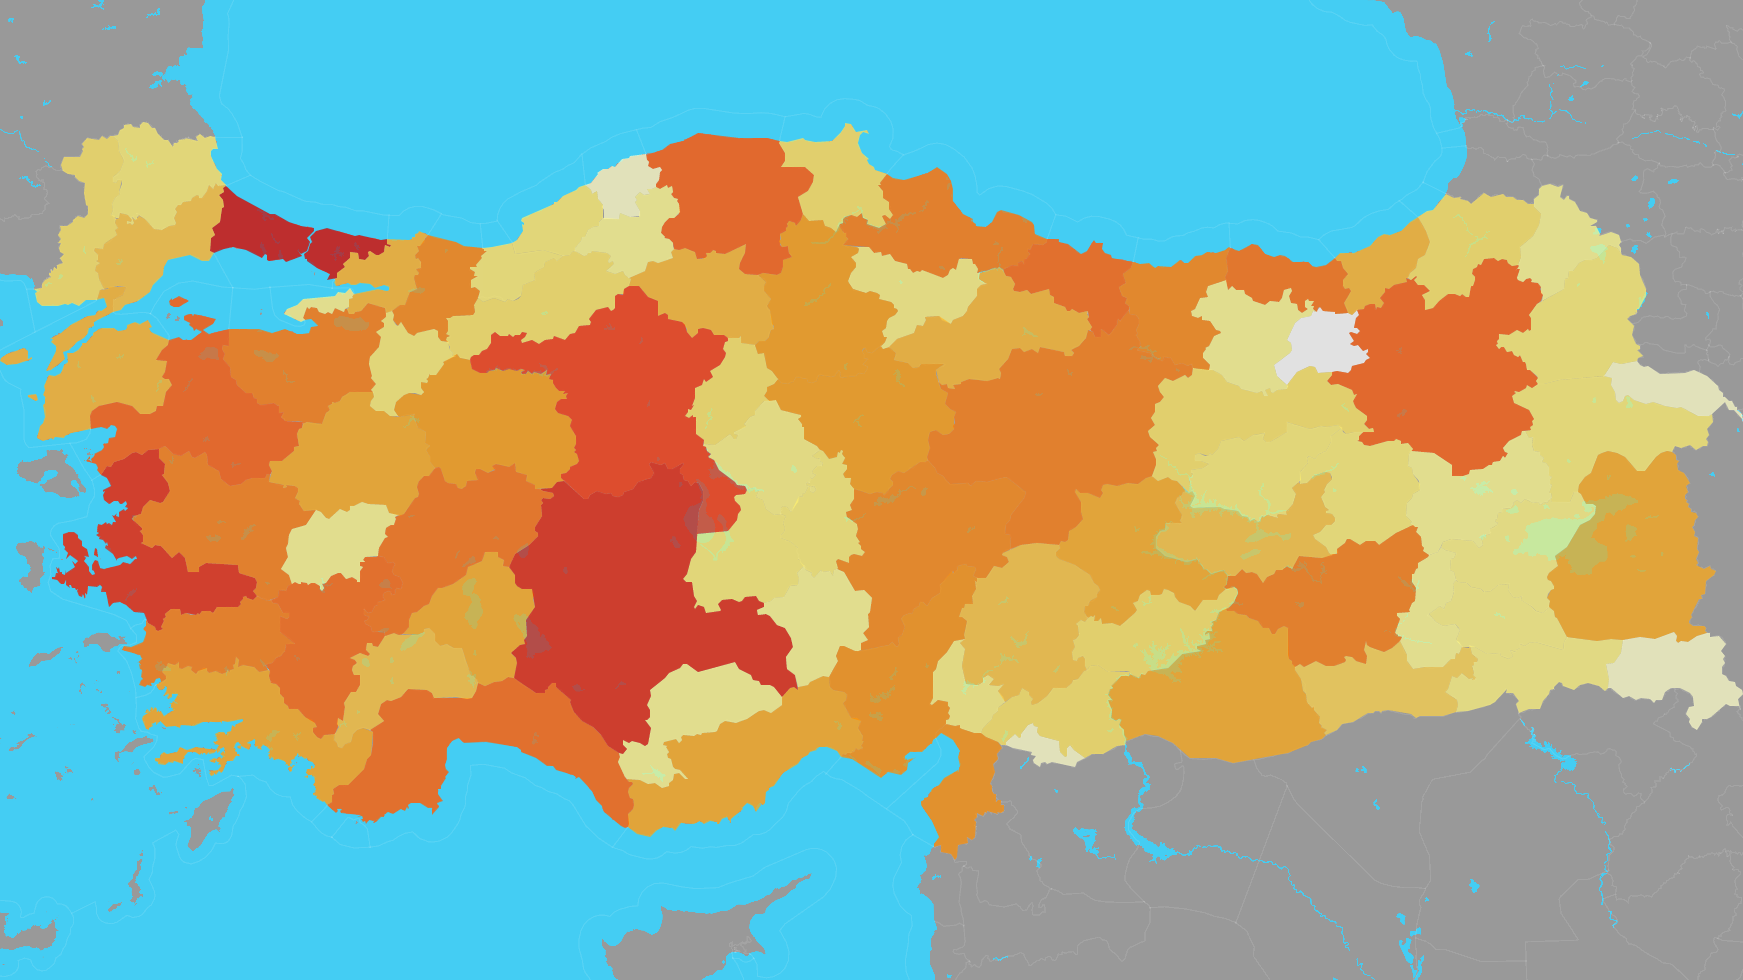 turkiye nin tum ilcelerinin detayli haritasi